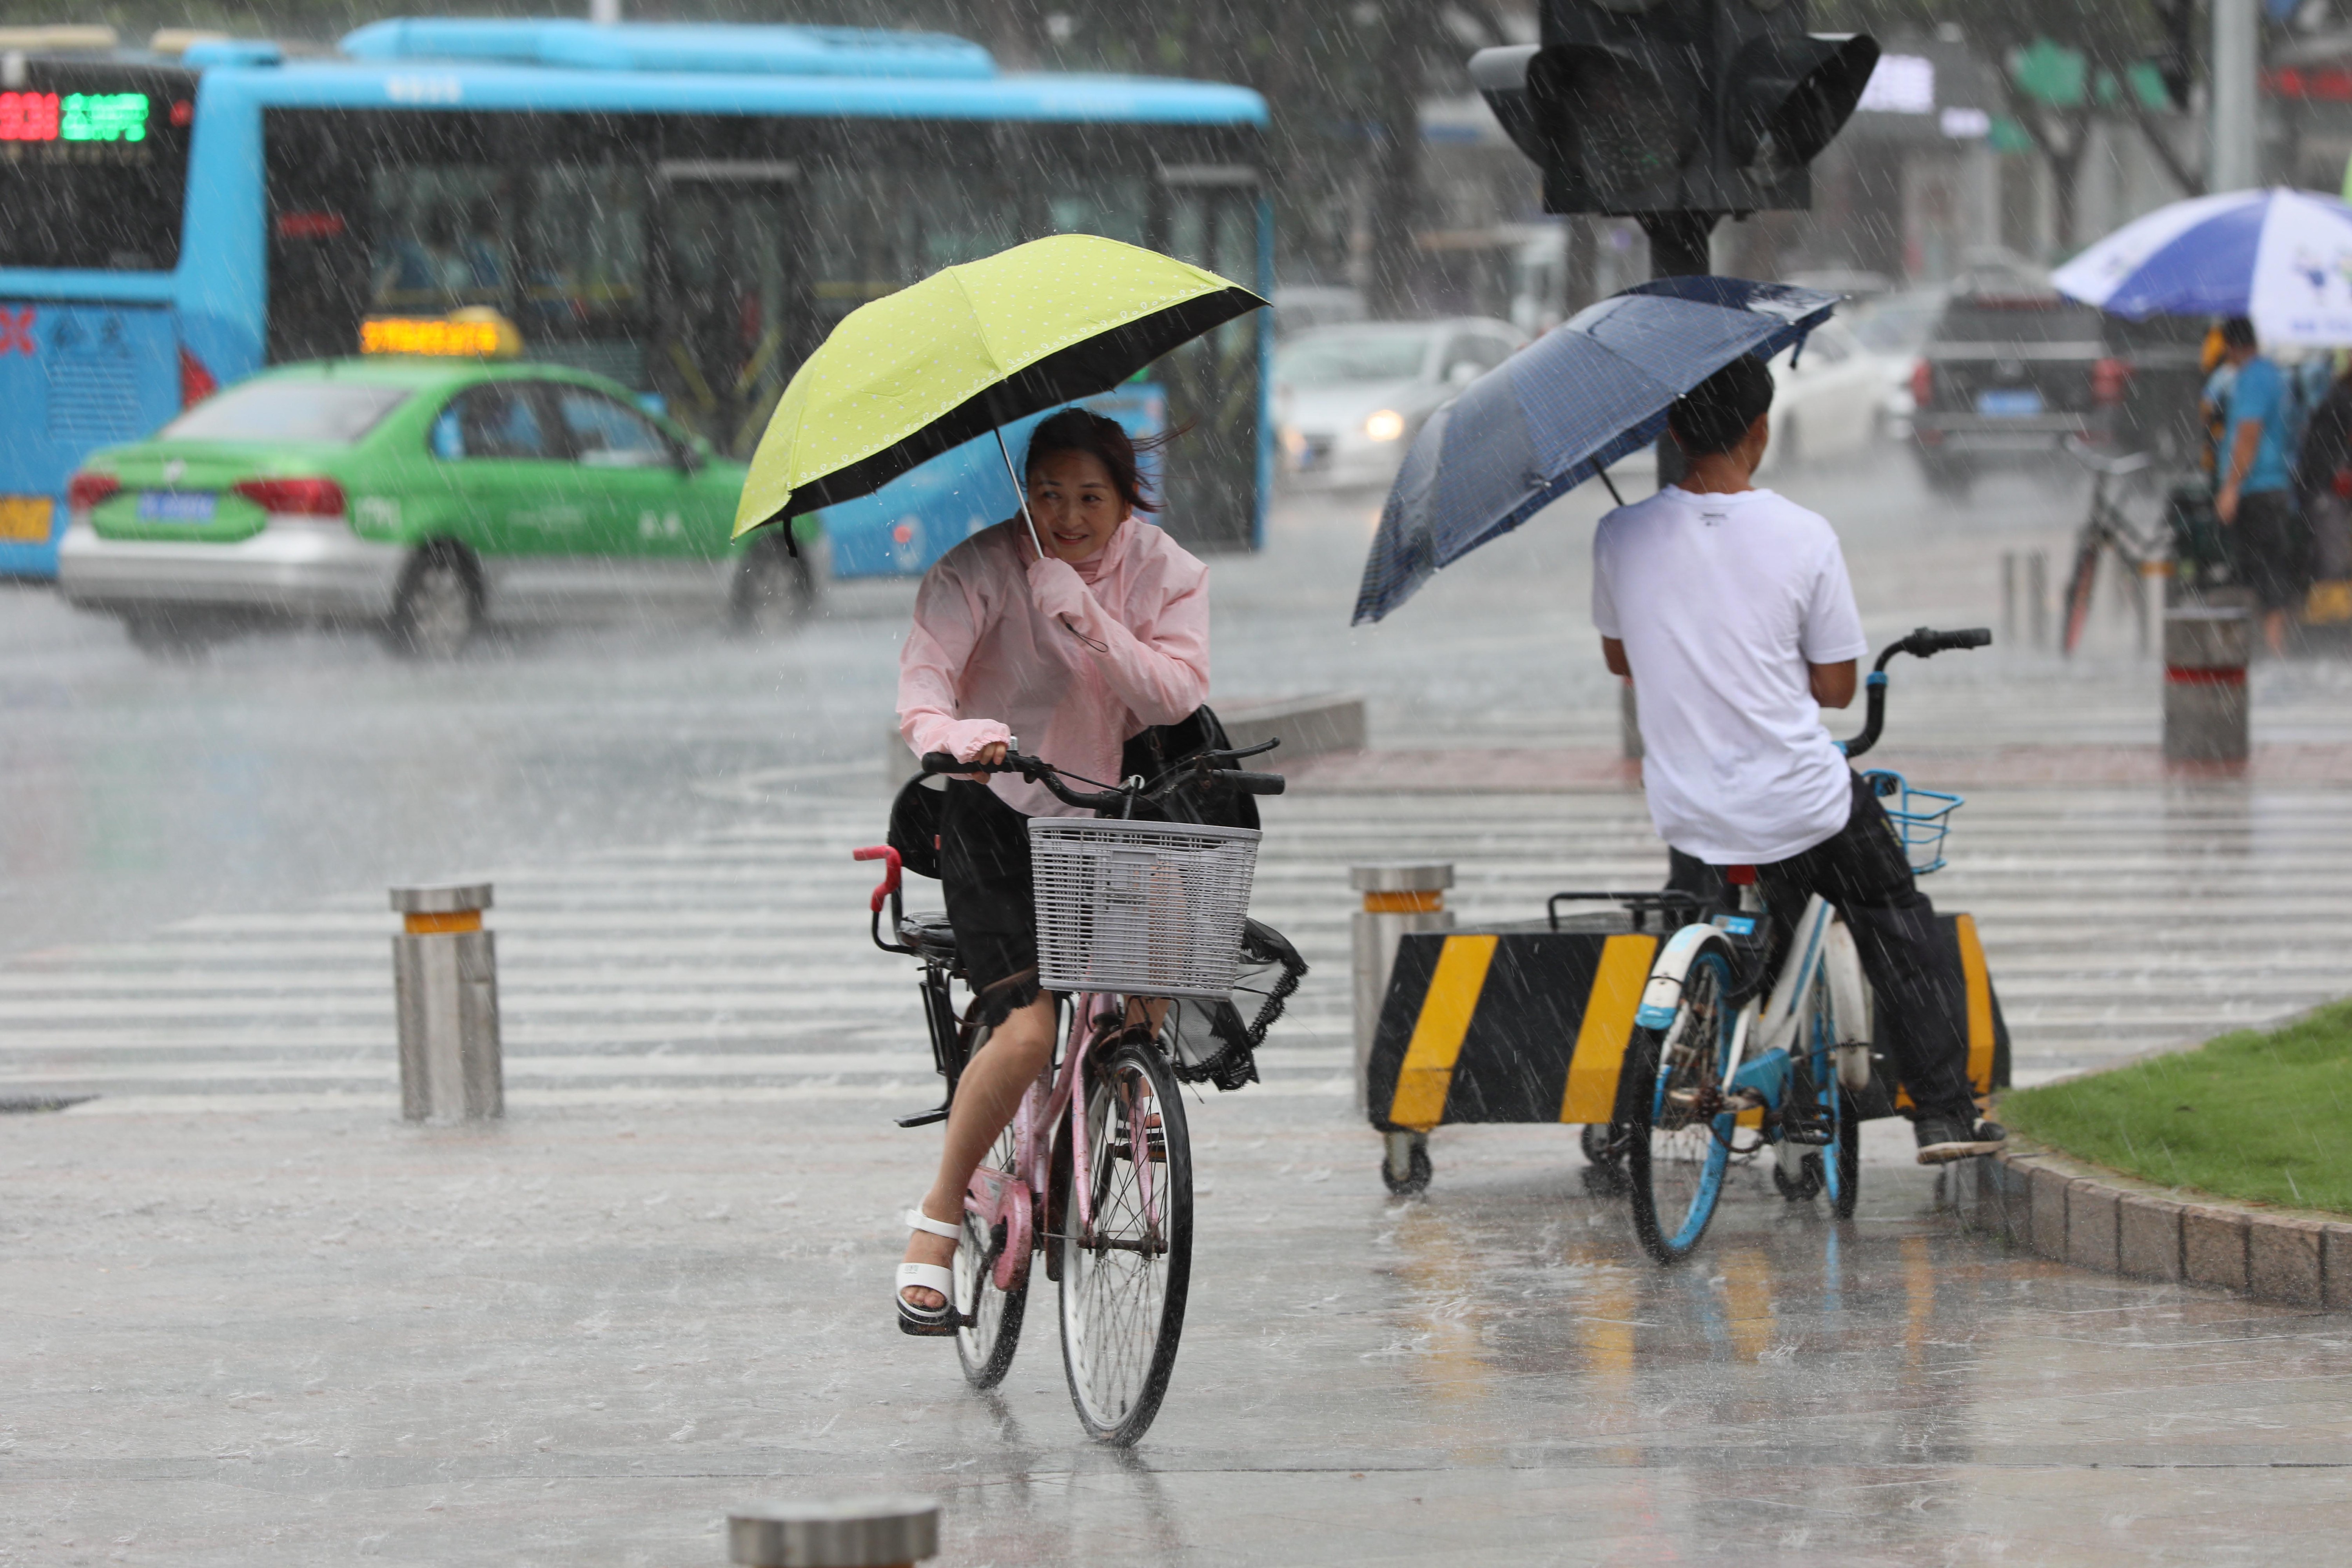 女子撑着伞,骑着单车雨中小心前行